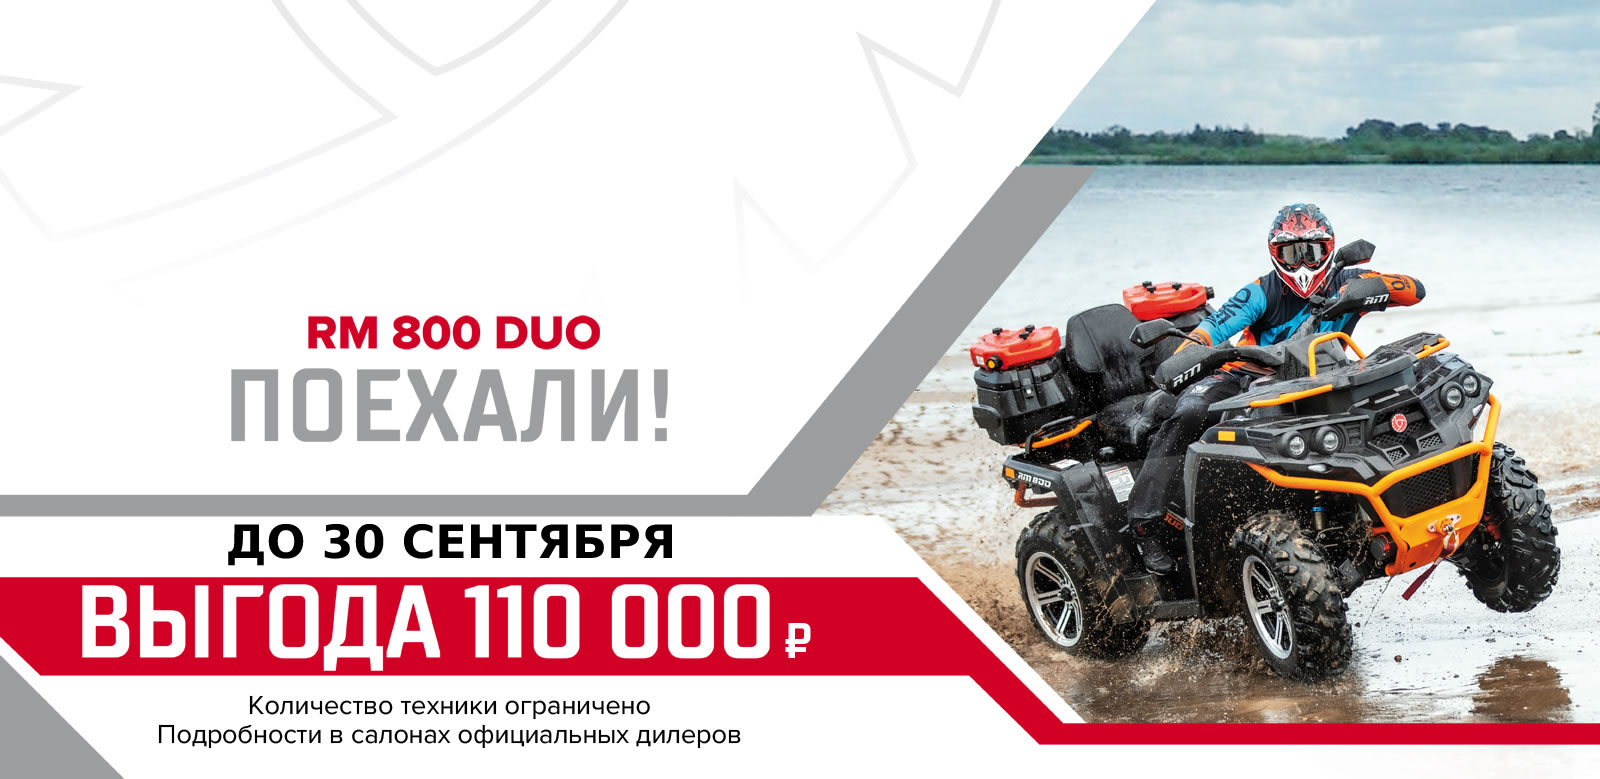 Квадроцикл РМ 800 Duo EPS — акция до 30 сентября